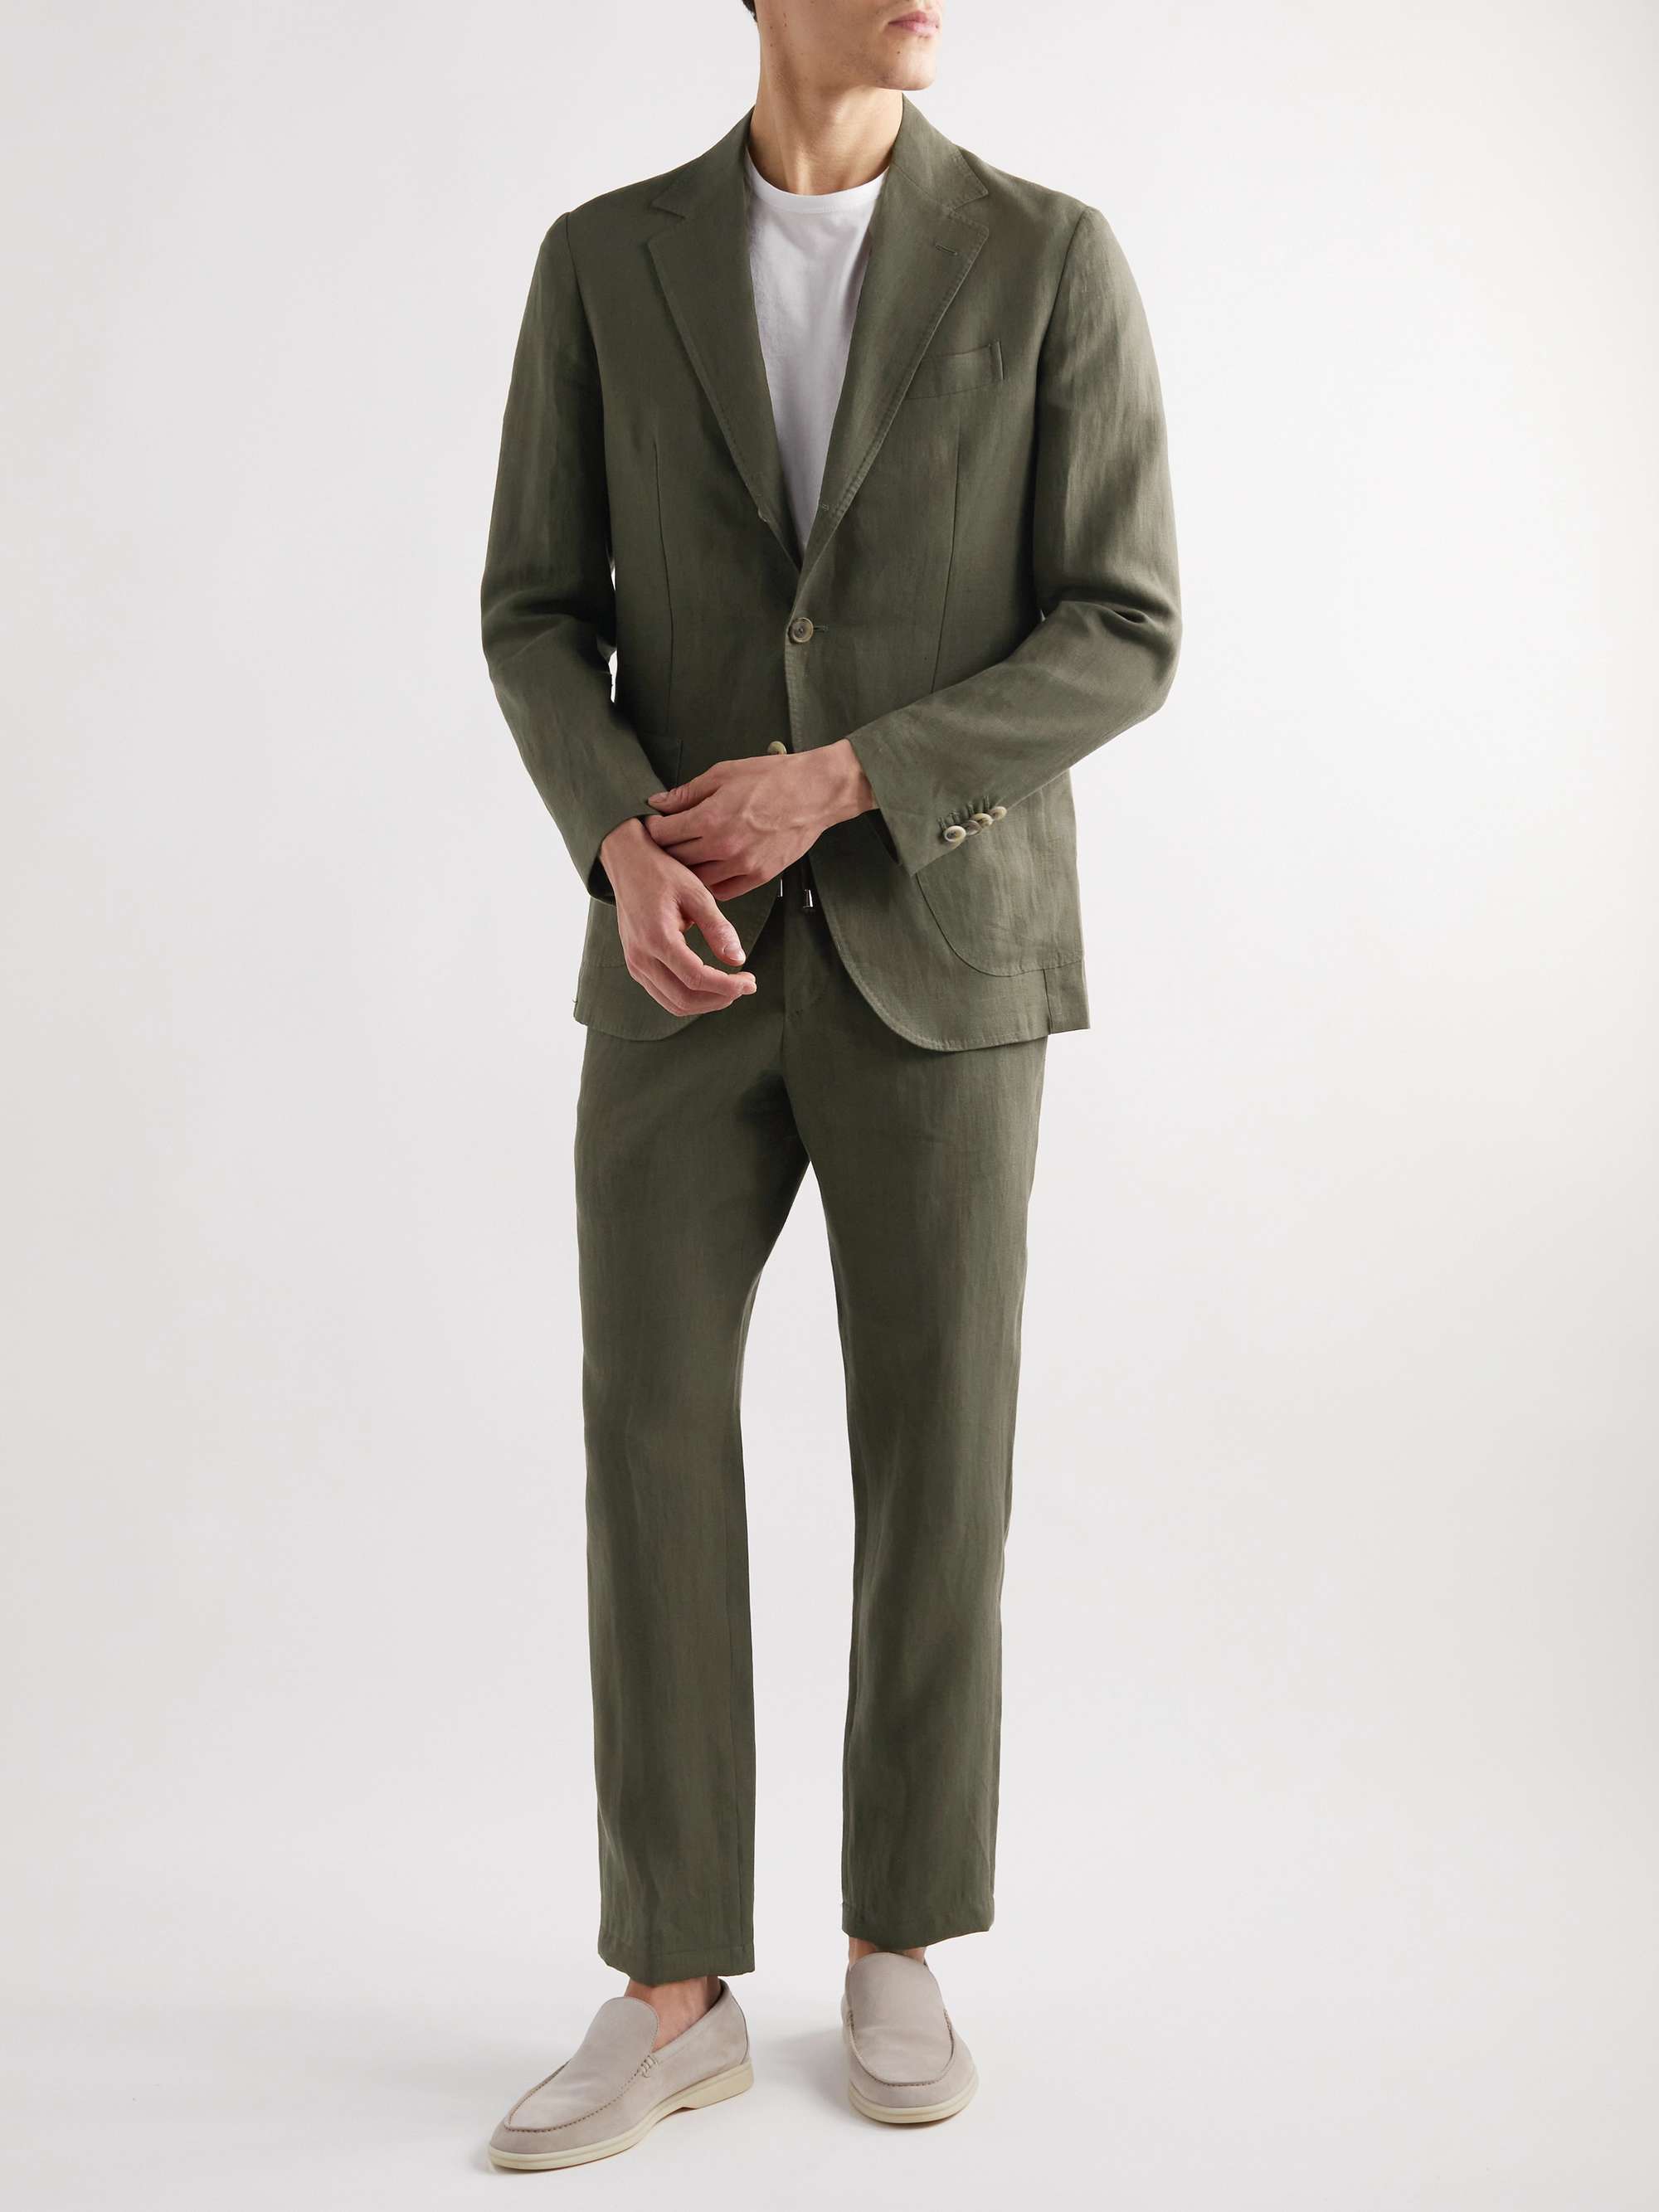 DE PETRILLO Unstructured Linen Suit Jacket for Men | MR PORTER